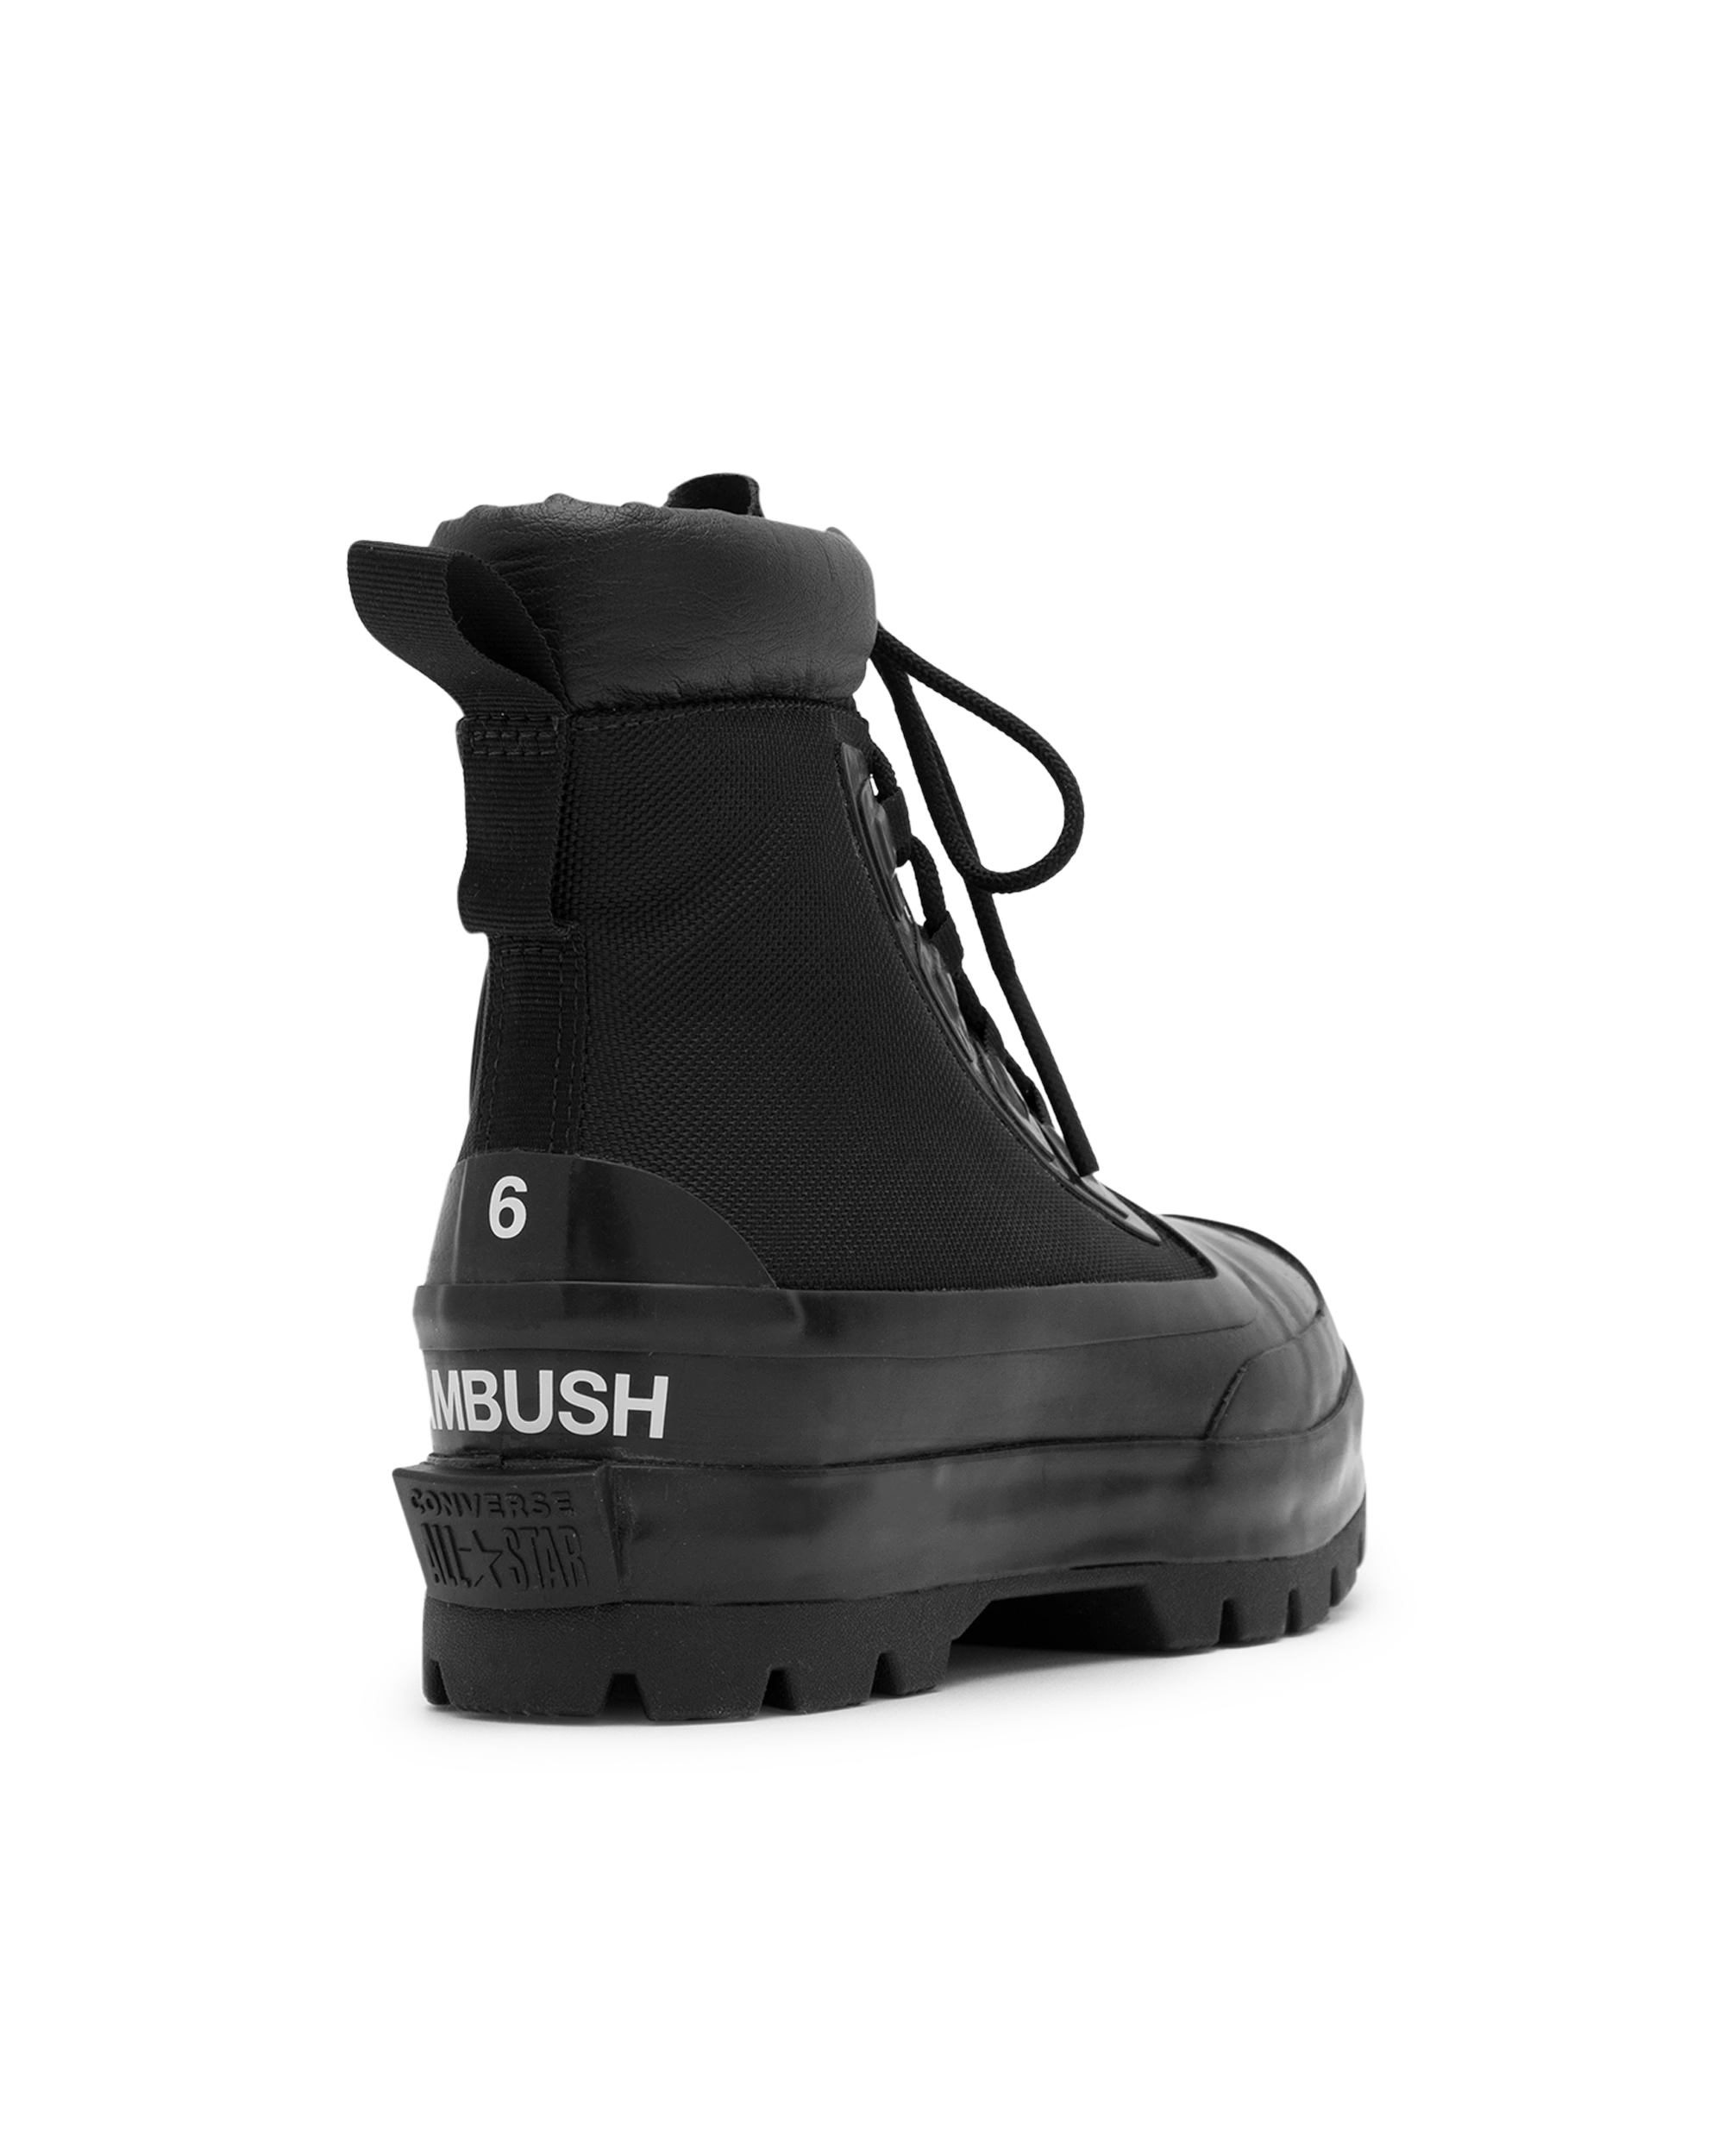 Ambush X Converse Ctas Duck Boots